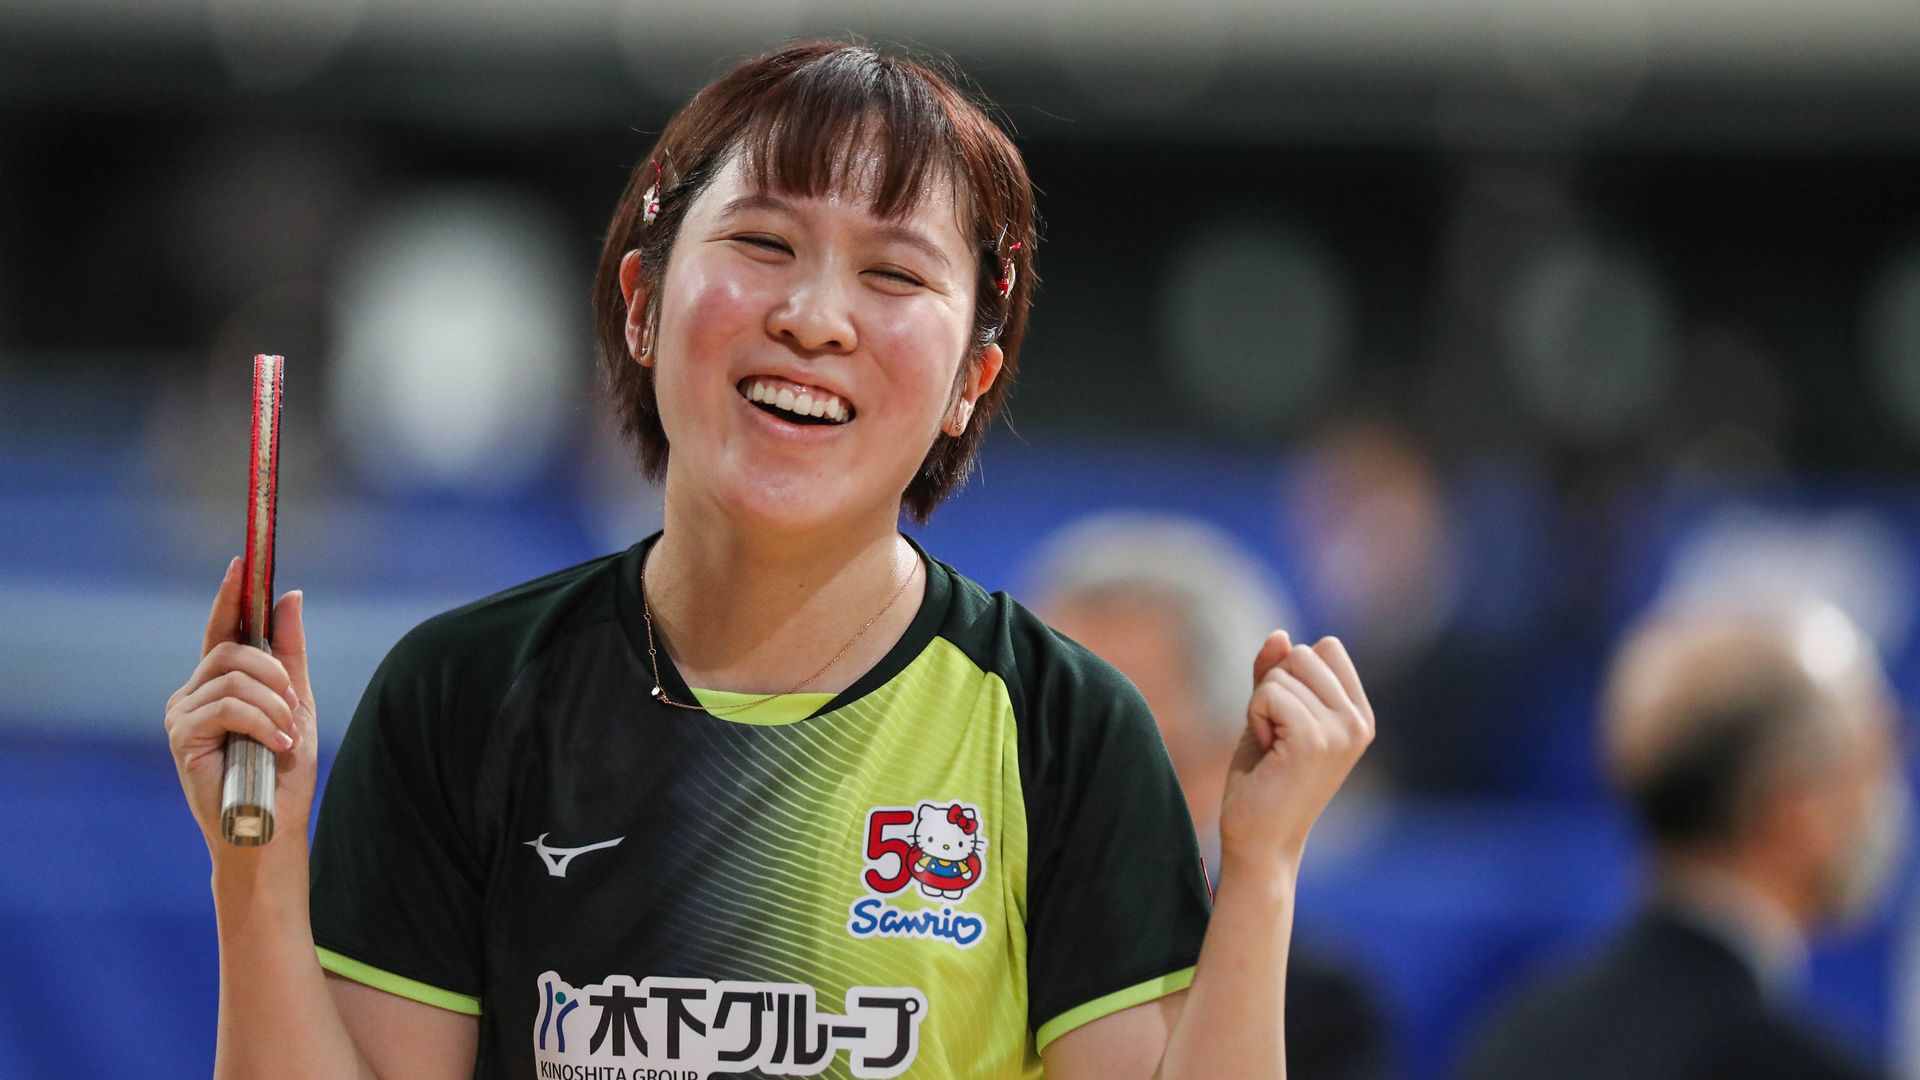 【全日本卓球】平野美宇、女子シングルス4回戦で面手凛に勝利して5回戦へ